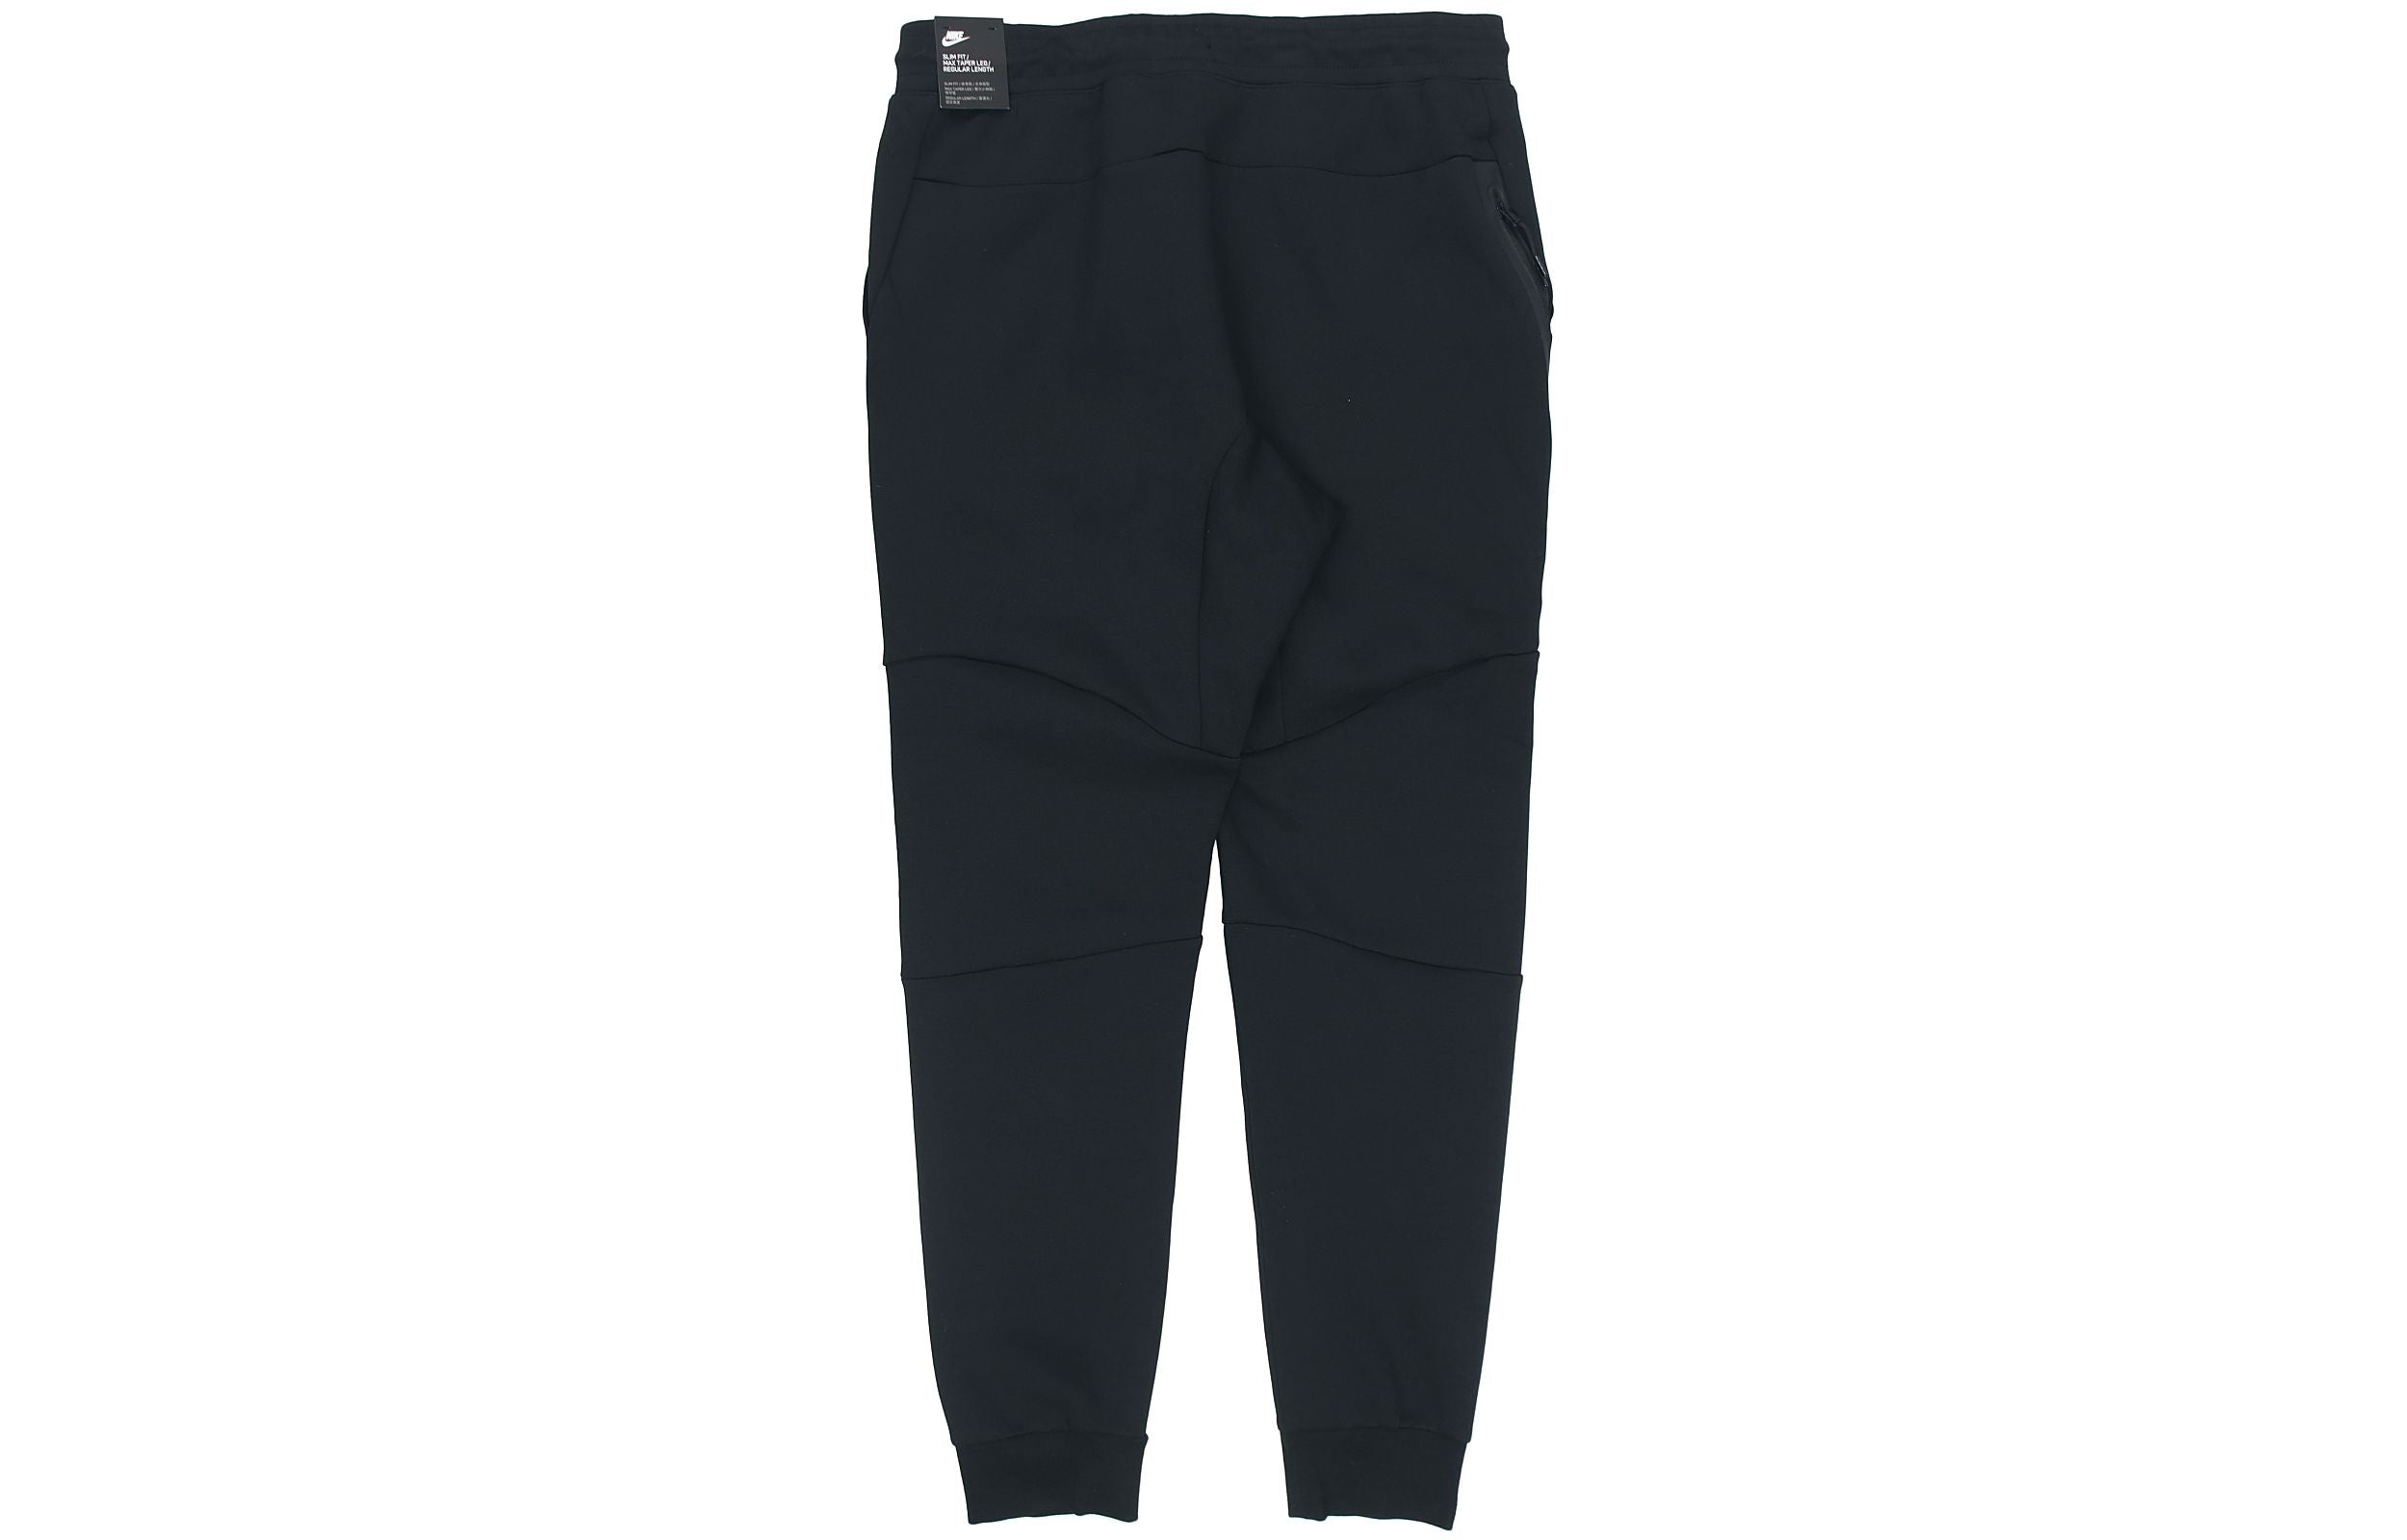 Nike Sportswear Tech Fleece Casual Sports Long Pants Black 805163-010 - 2